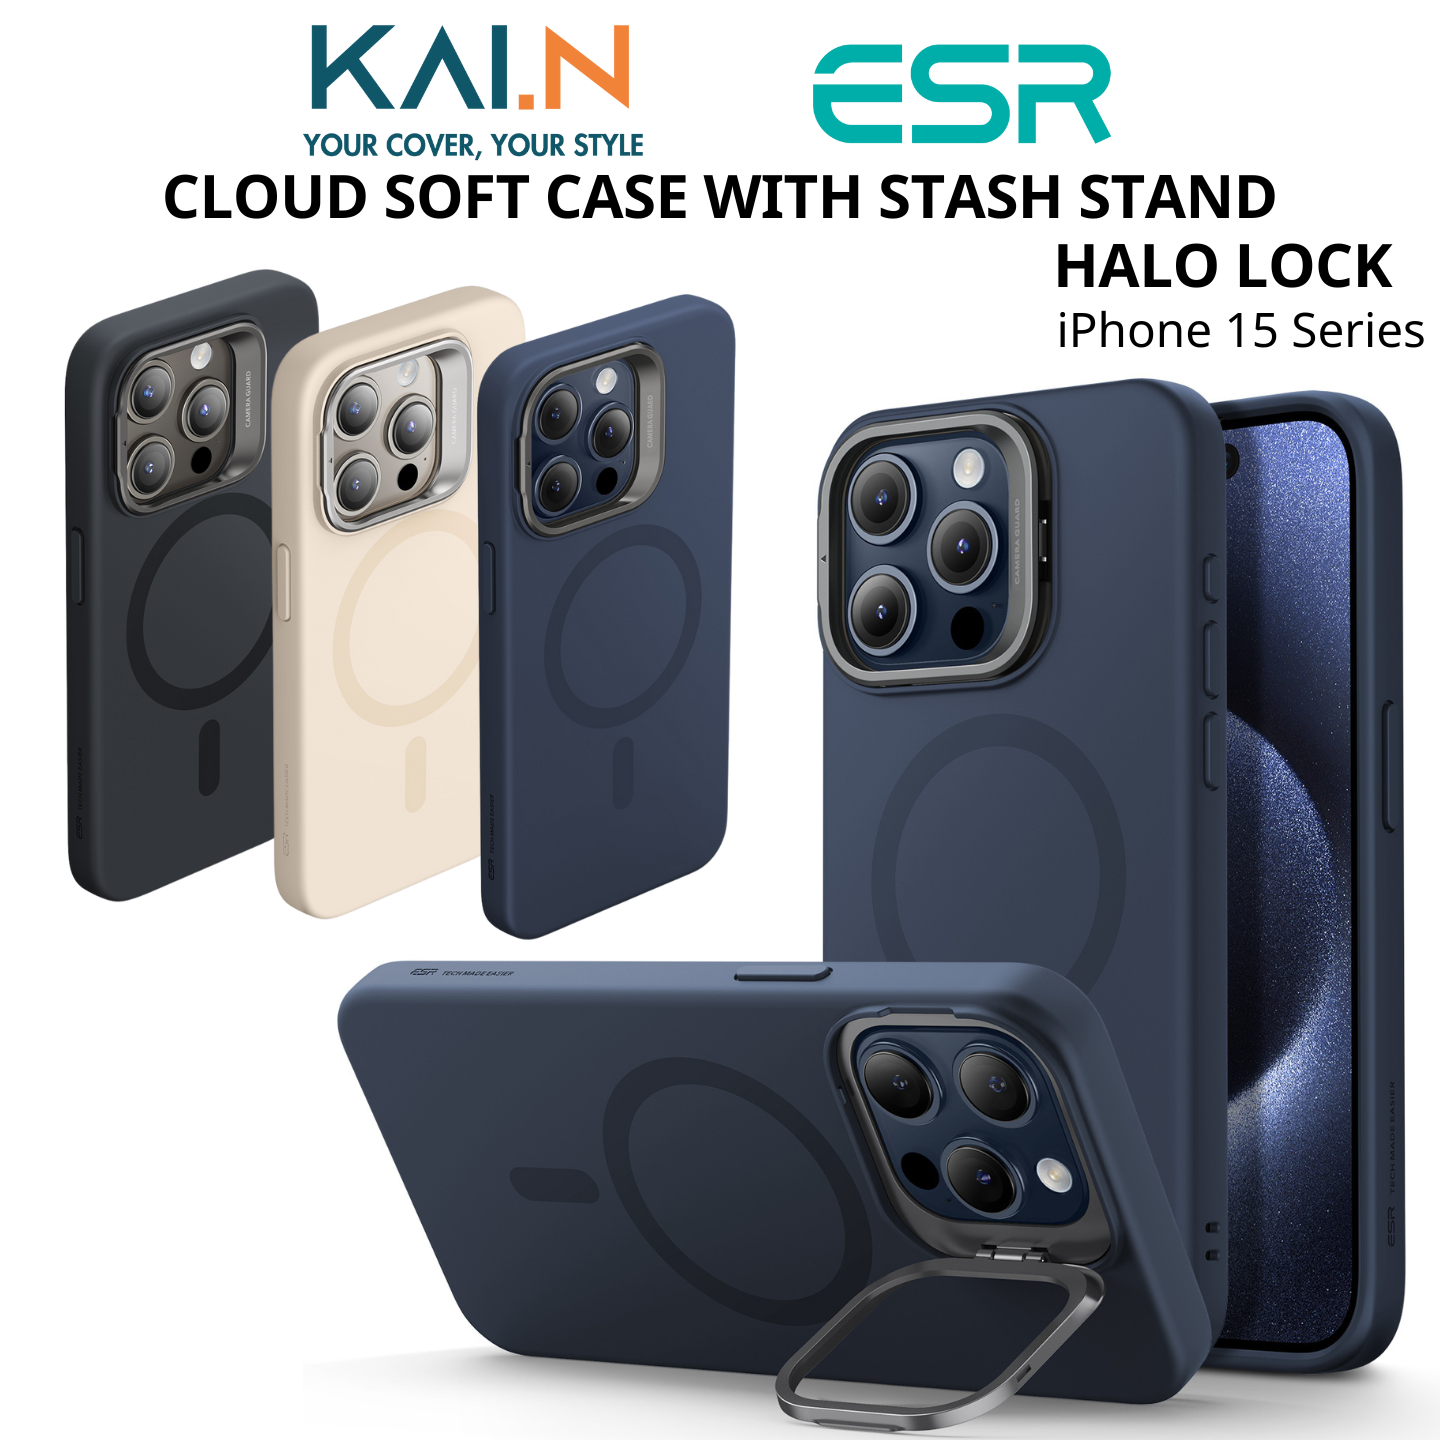 Ốp Lưng Case ESR Silicone Sạc Không Dây Dành Cho iPhone 15 Pro Max / iPhone 15 Pro, Cloud Soft Case with Stash Stand (HaloLock) - HÀNG CHÍNH HÃNG